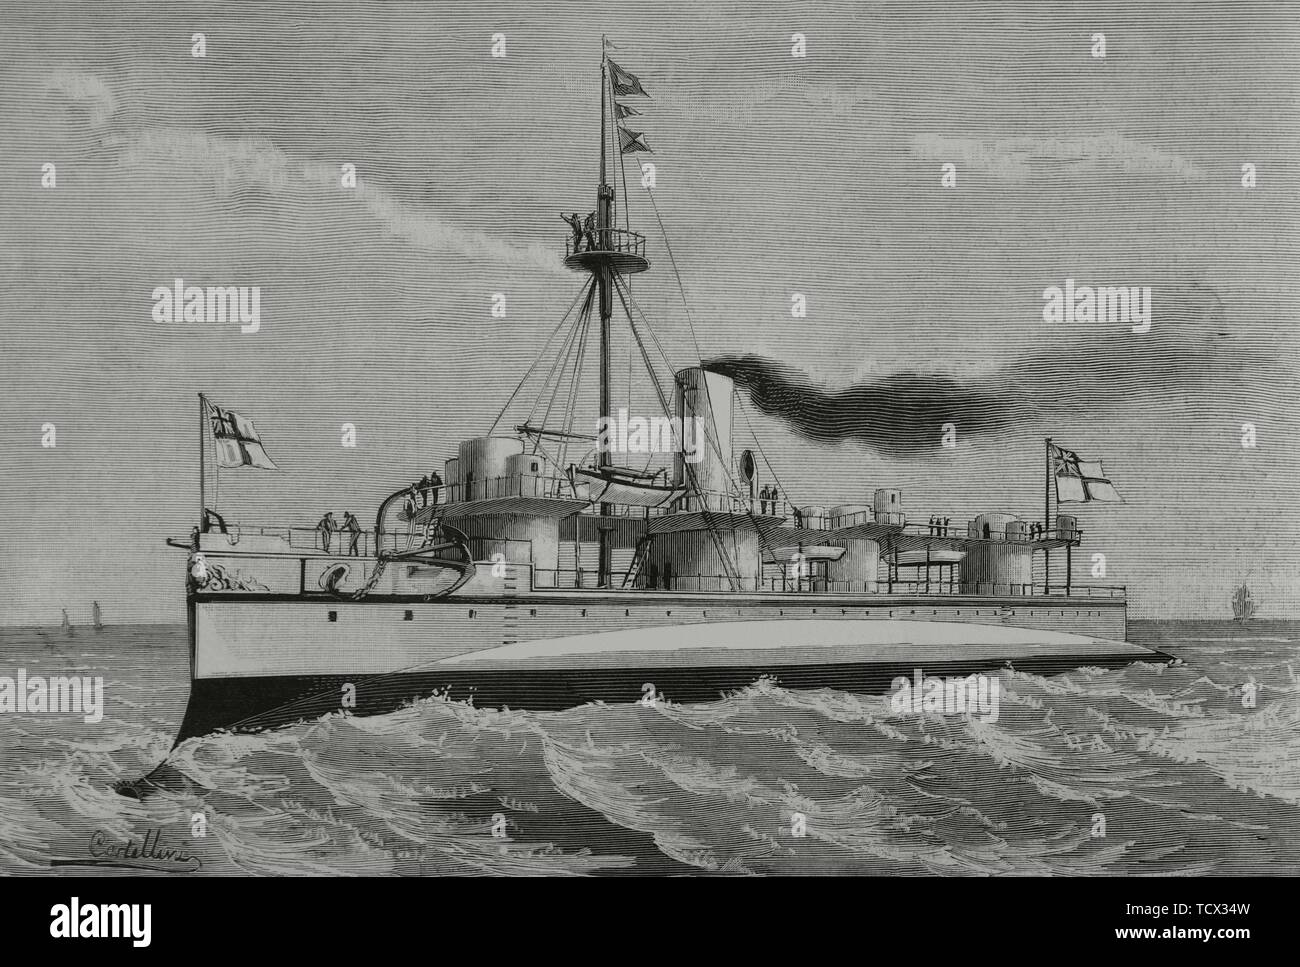 El 'Polifemo', ariete buque y lanza-siluri, botado al agua en Chatham (Inglaterra). Grabado por Rico. La Ilustración Española y americana, 8 de Febrero de 1882. Foto Stock